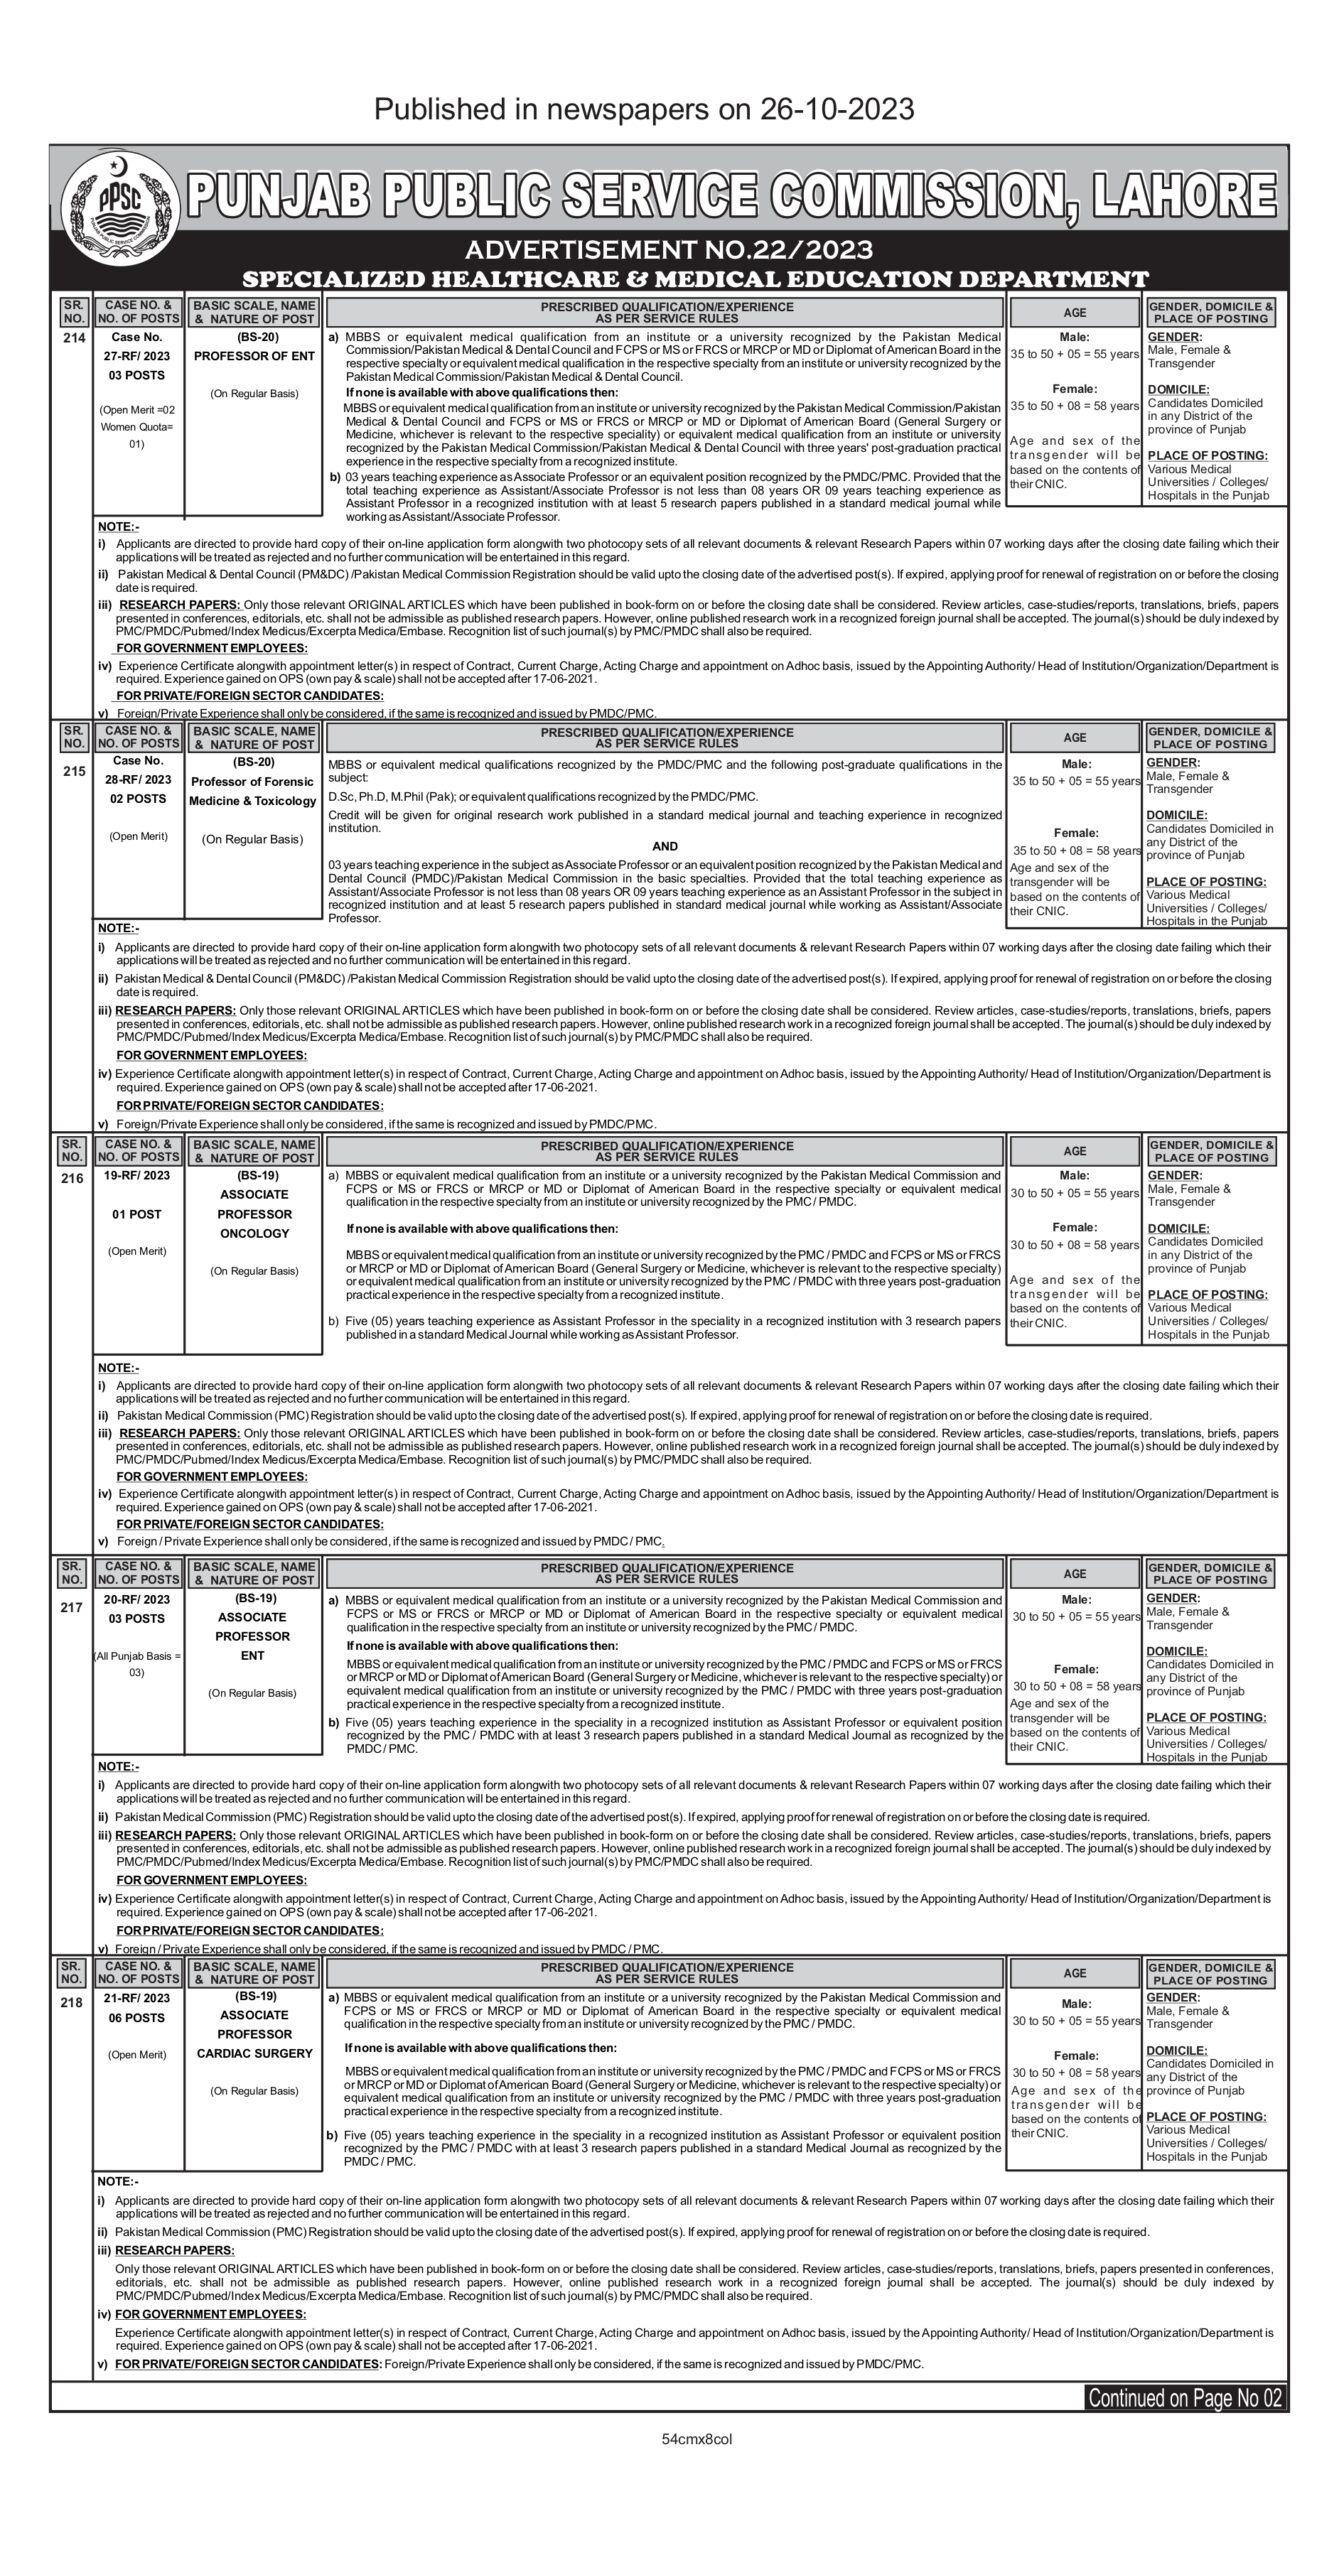 PPSC (Punjab Public Service Commission Latest jobs 2023